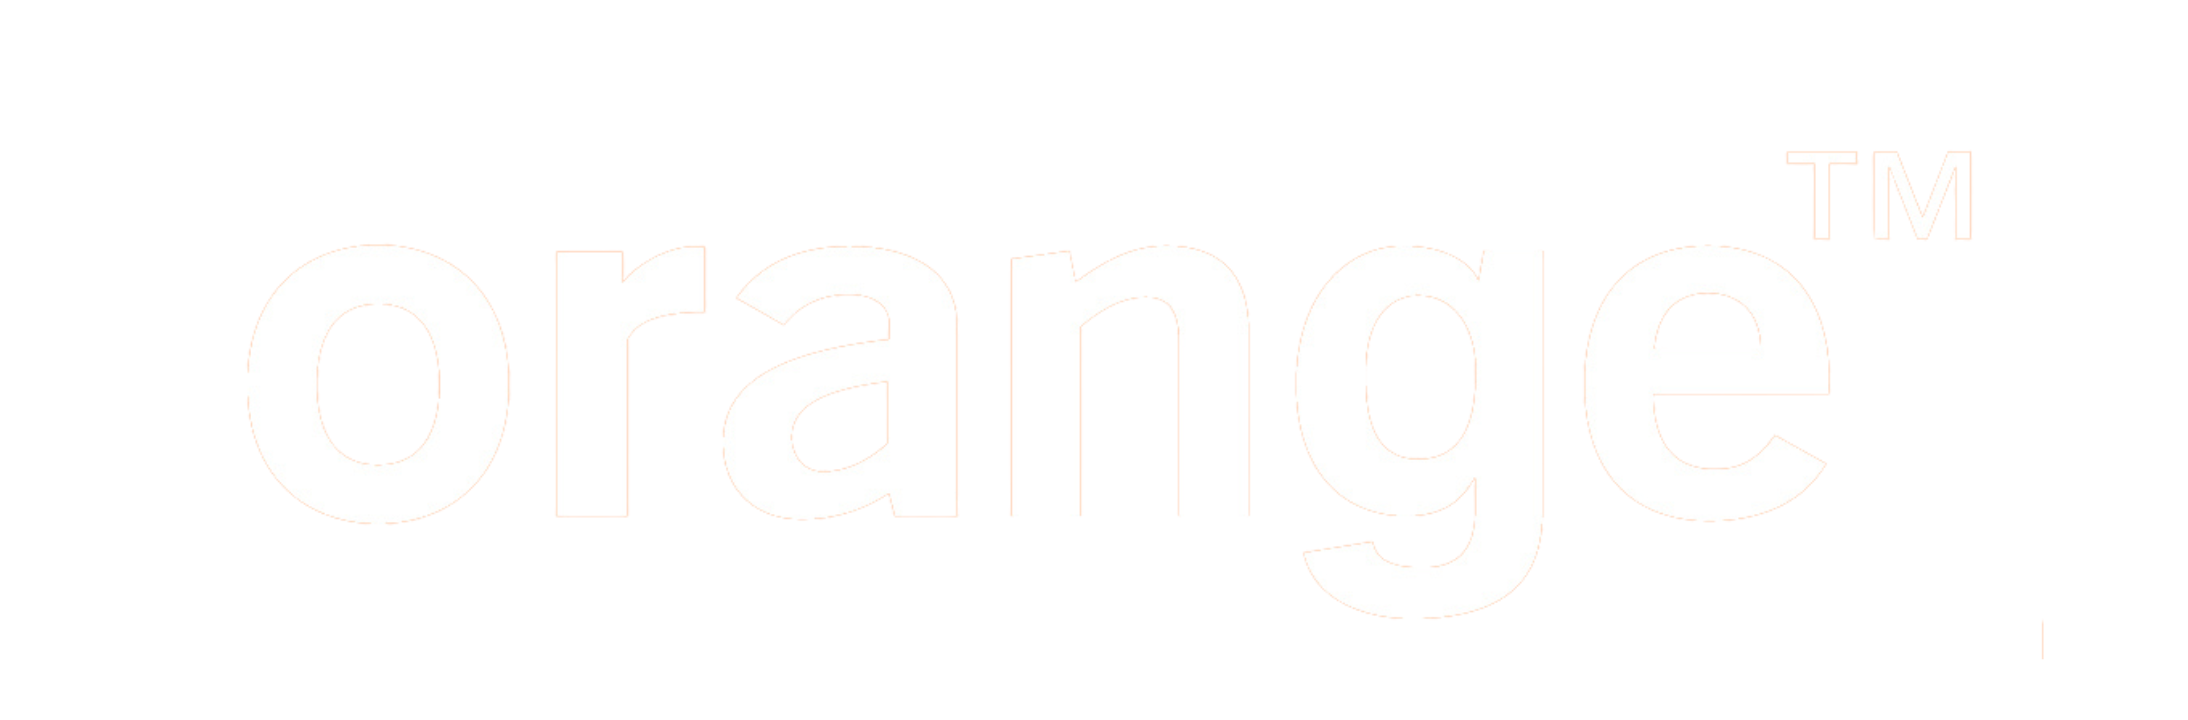 Logotipo naranja con símbolo de marca registrada.